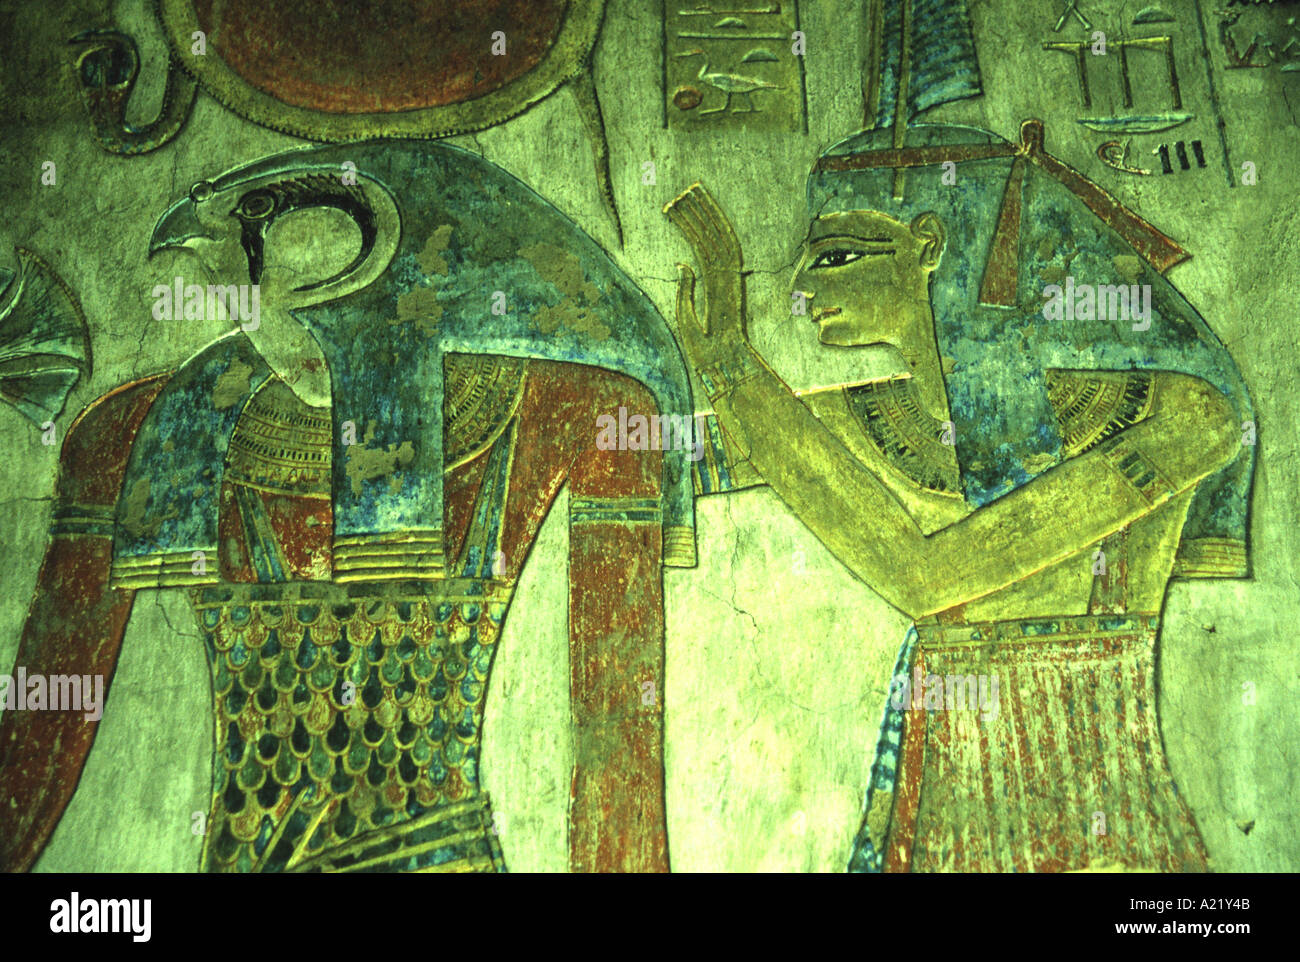 Mur peint relief tombe de Thoutmosis 1 Vallée des Rois Egypte Louxor Banque D'Images